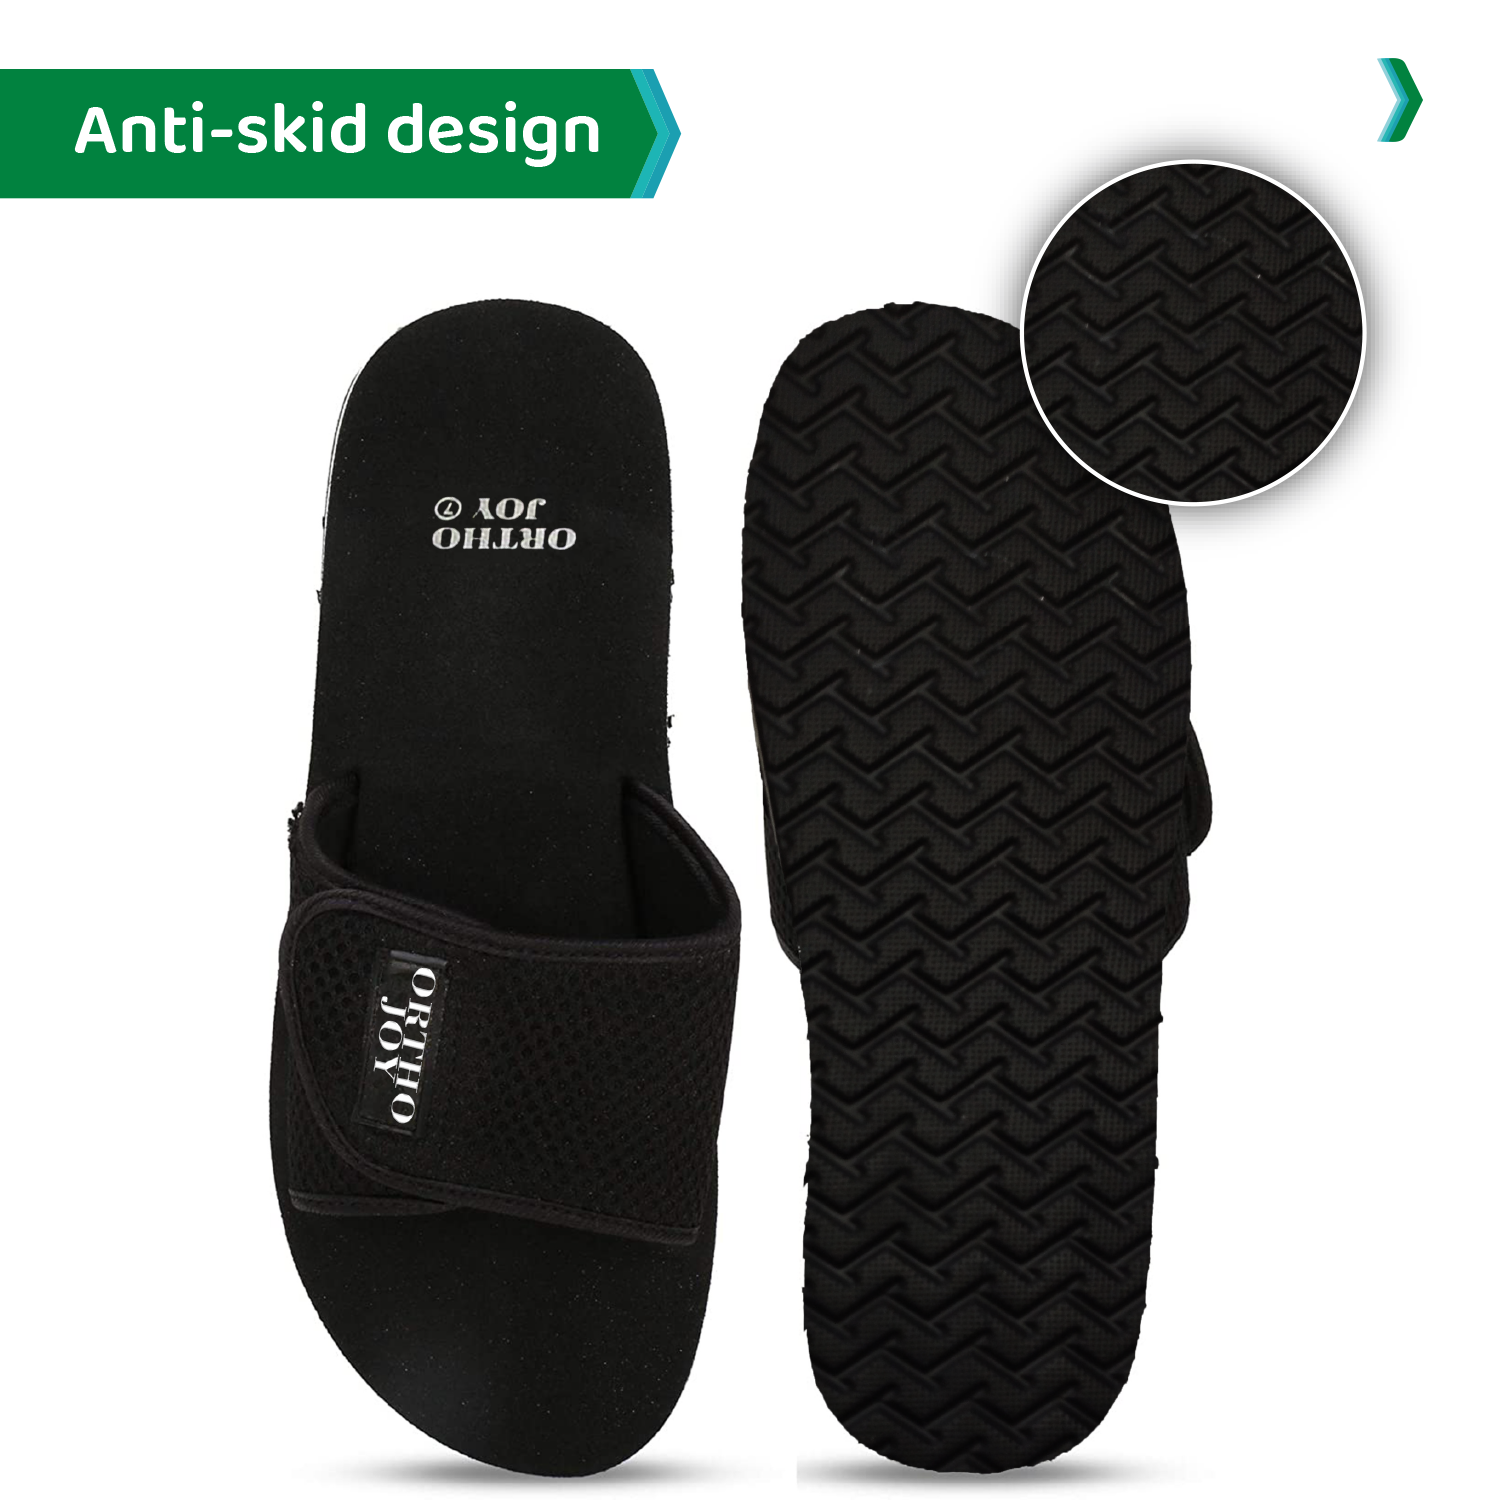 ORTHO JOY Extra Soft Doctor Ortho Slippers for Men/Flip-flops.